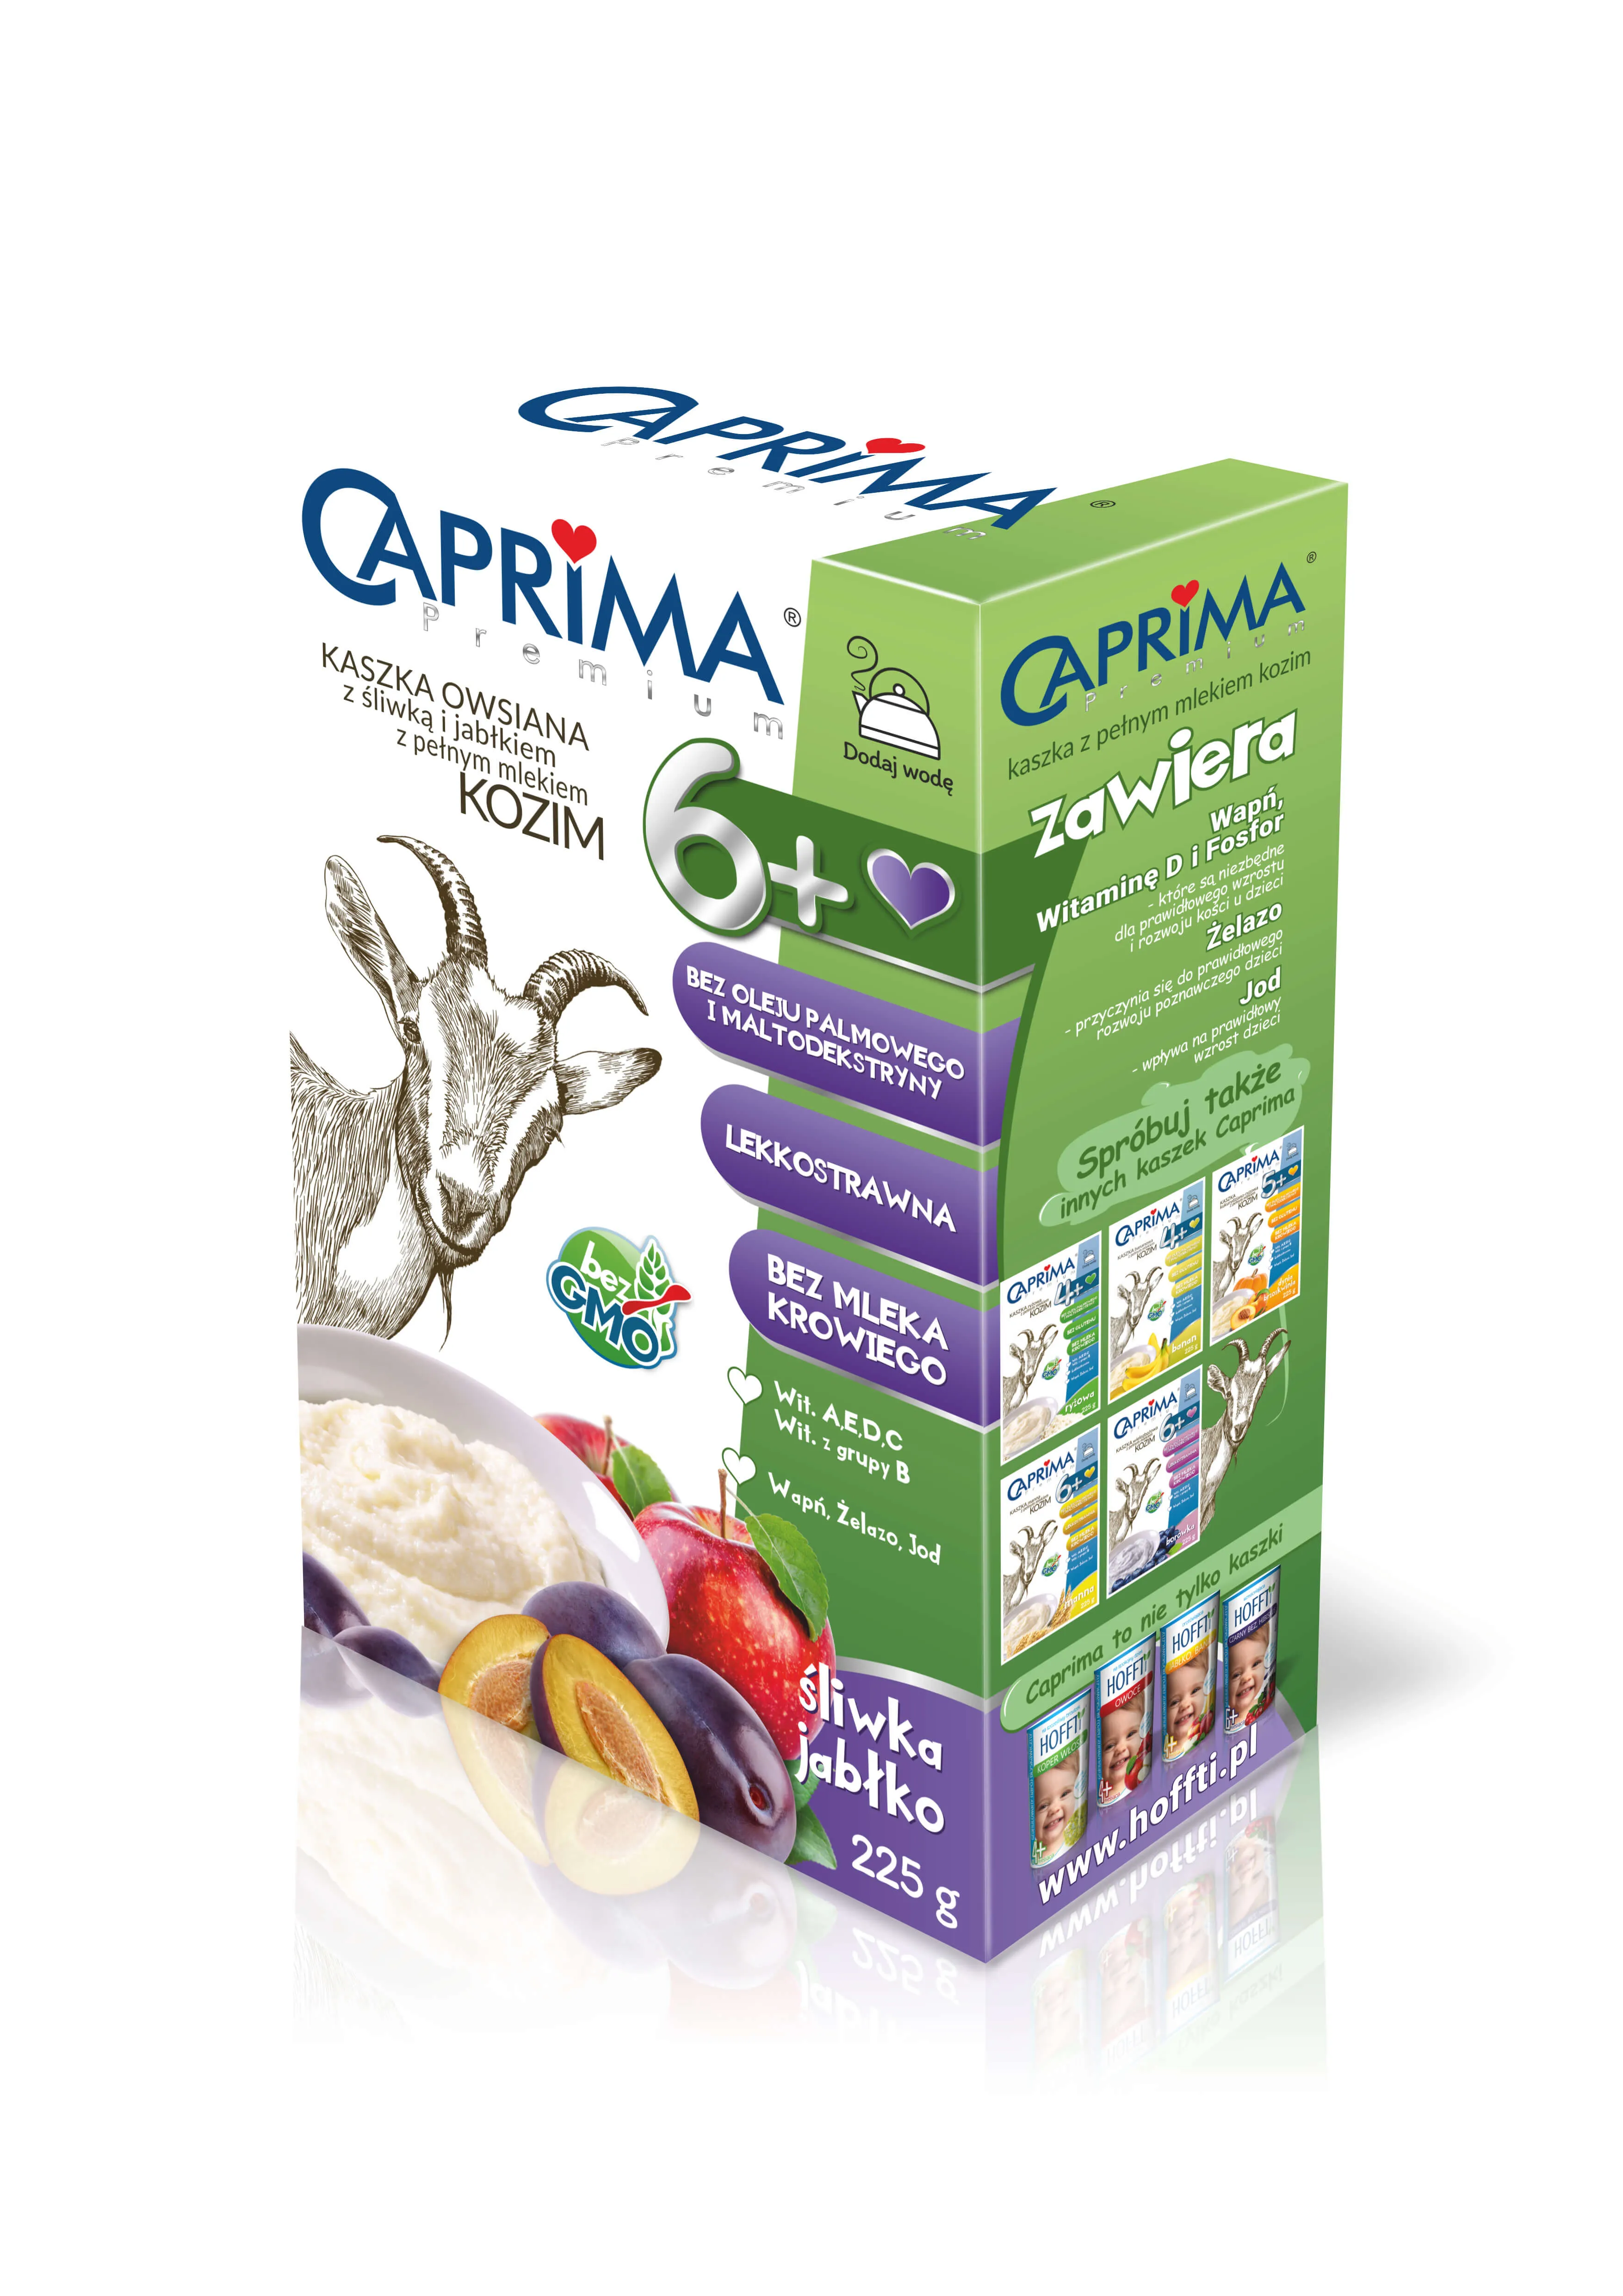 _Caprima Premium, kaszka owsiana z pełnym mlekiem kozim ze śliwką i jabłkiem, 225 g